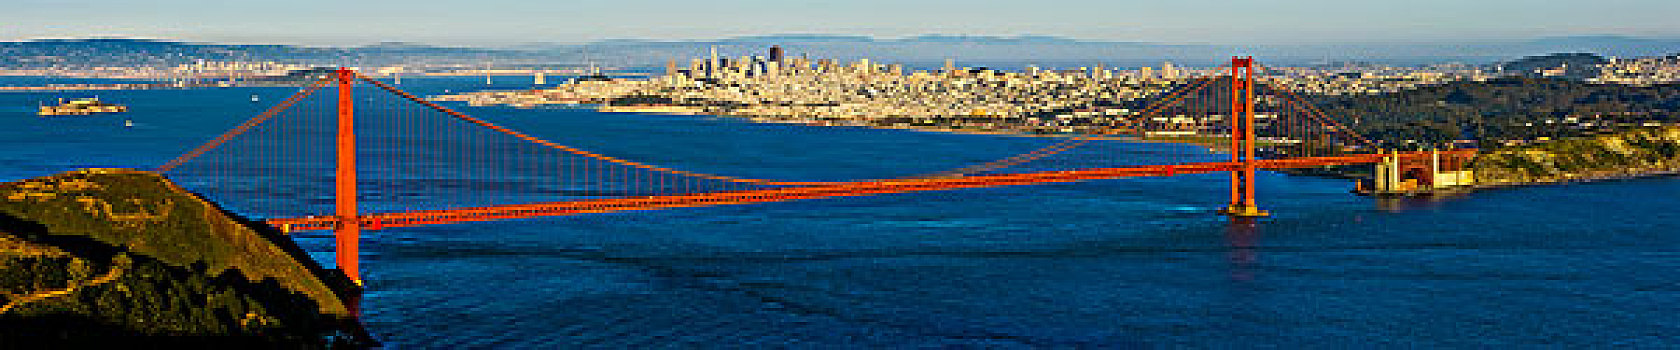 吊桥,湾,城市,背景,金门大桥,旧金山湾,旧金山,加利福尼亚,美国